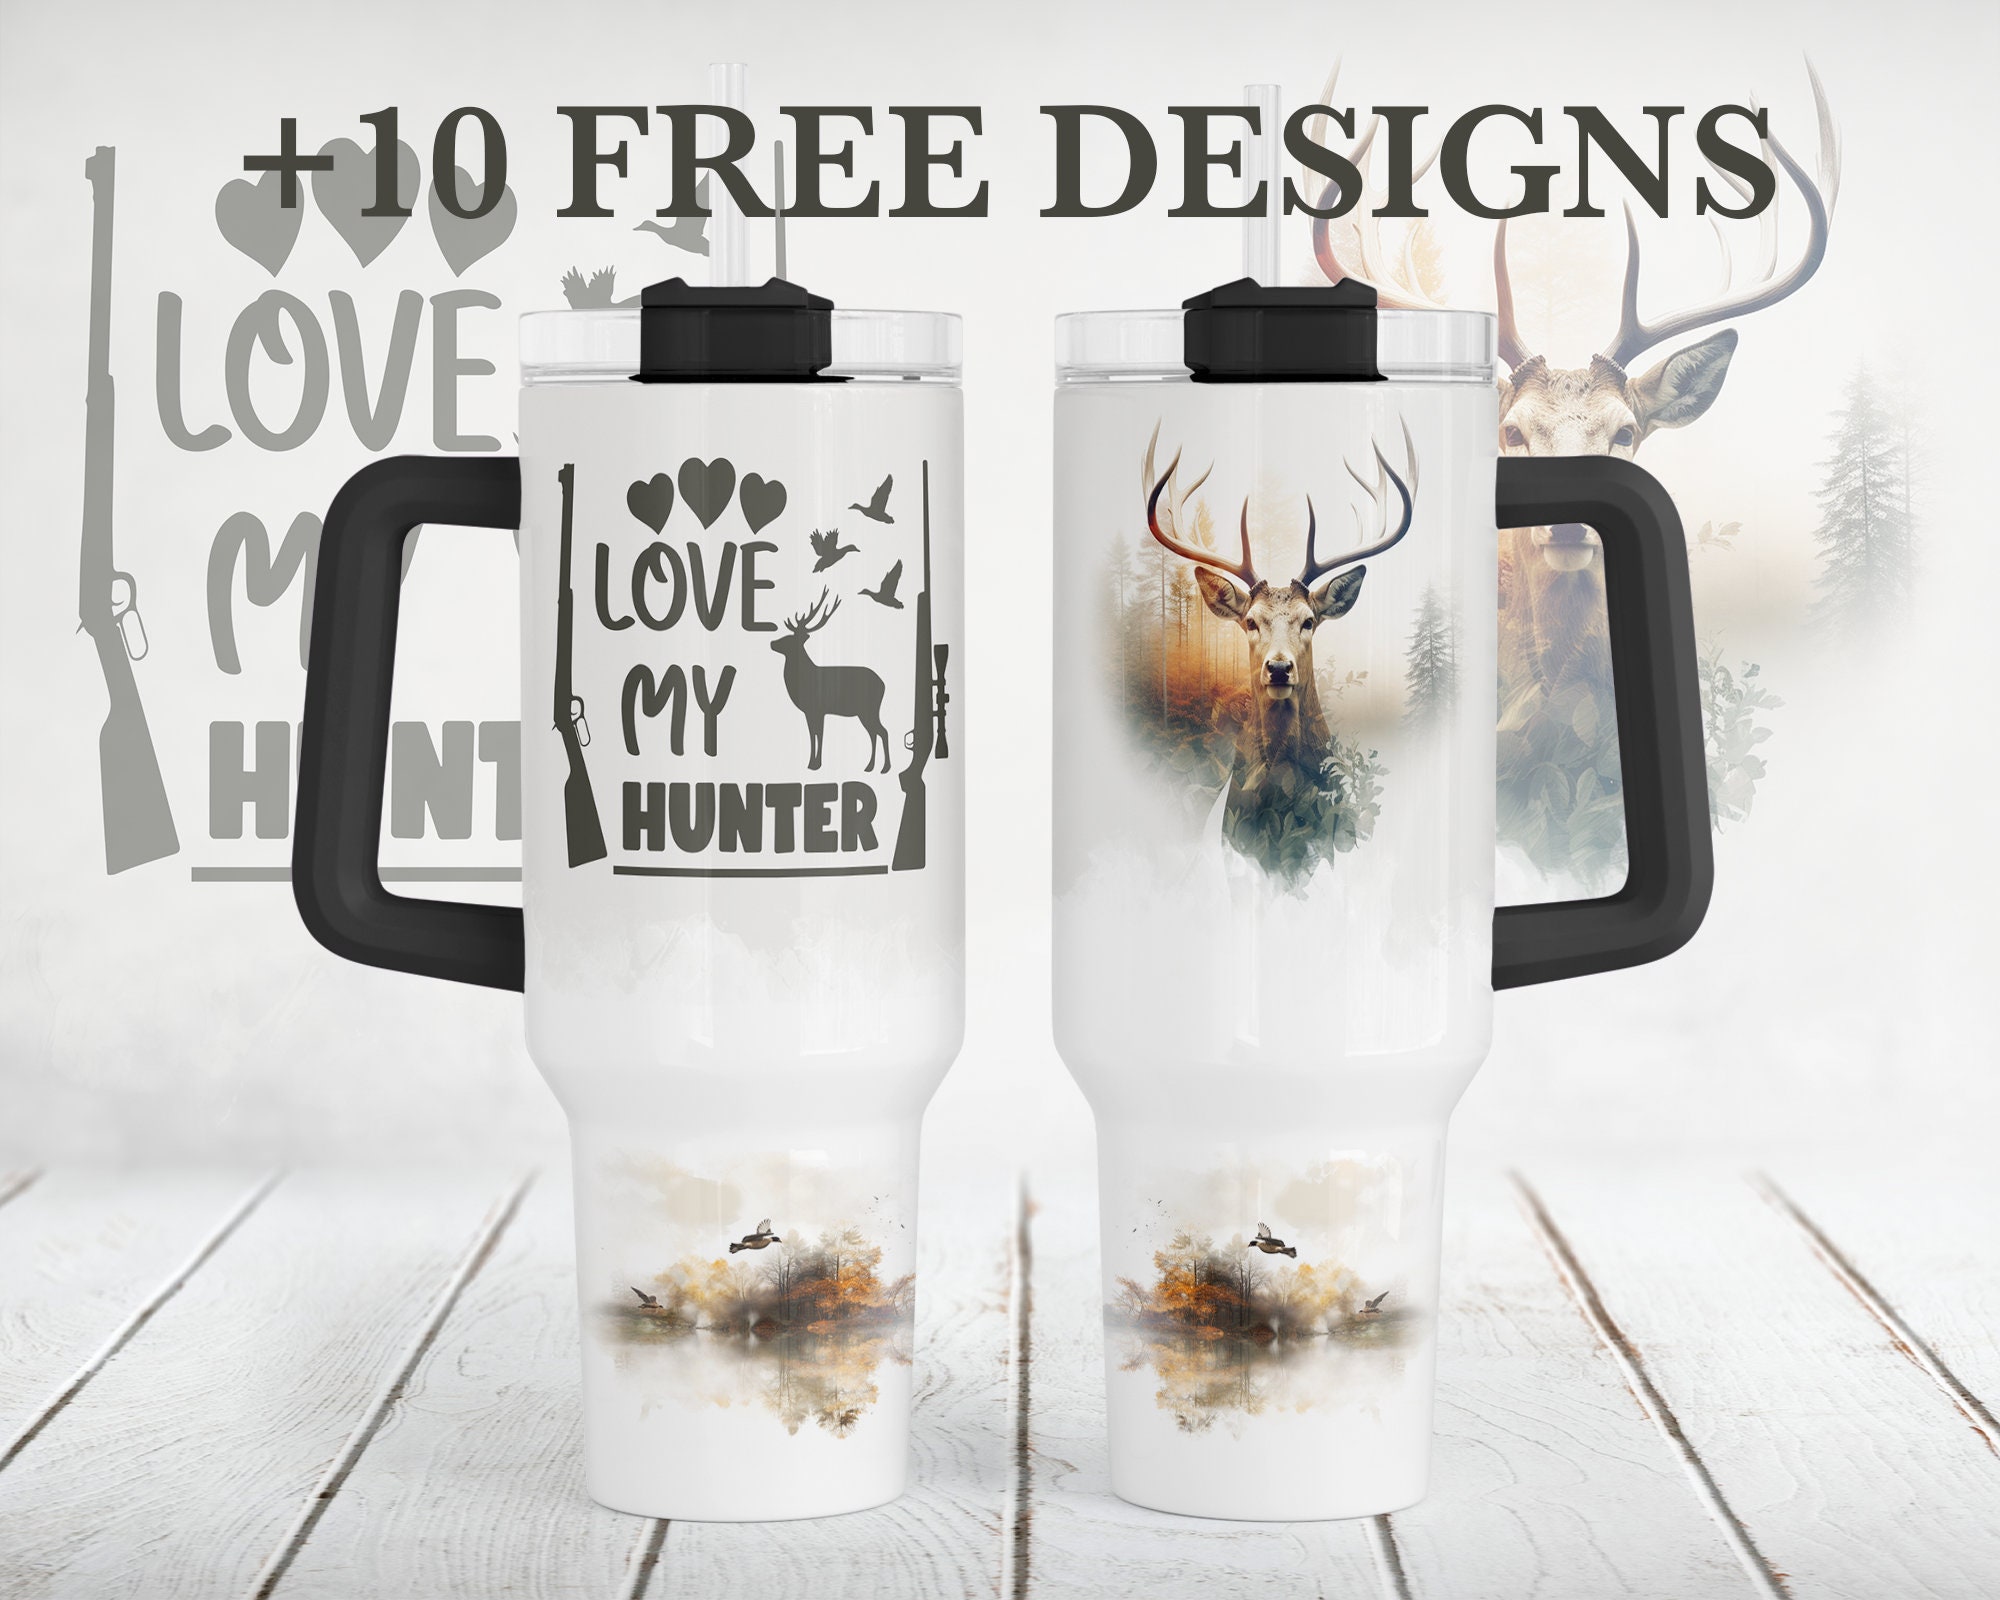 Deer Print Design 40 Oz Tumbler for Men